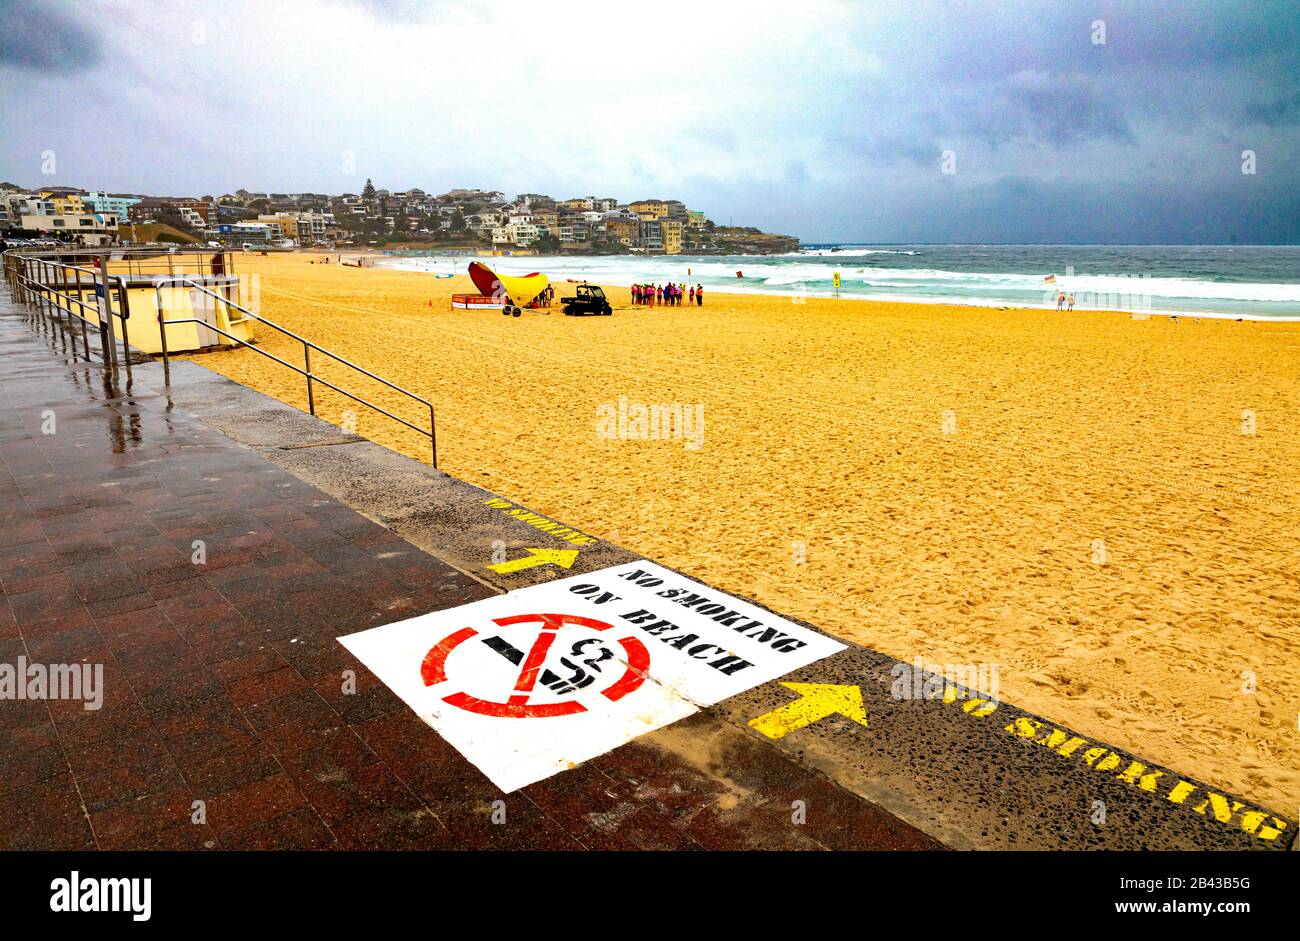 Panneau non fumeur à la célèbre plage Bondi de Sydney, déserte mais pour les cours de formation des gardes de la vie pendant les restrictions sur le public causées par Covic 19 Banque D'Images